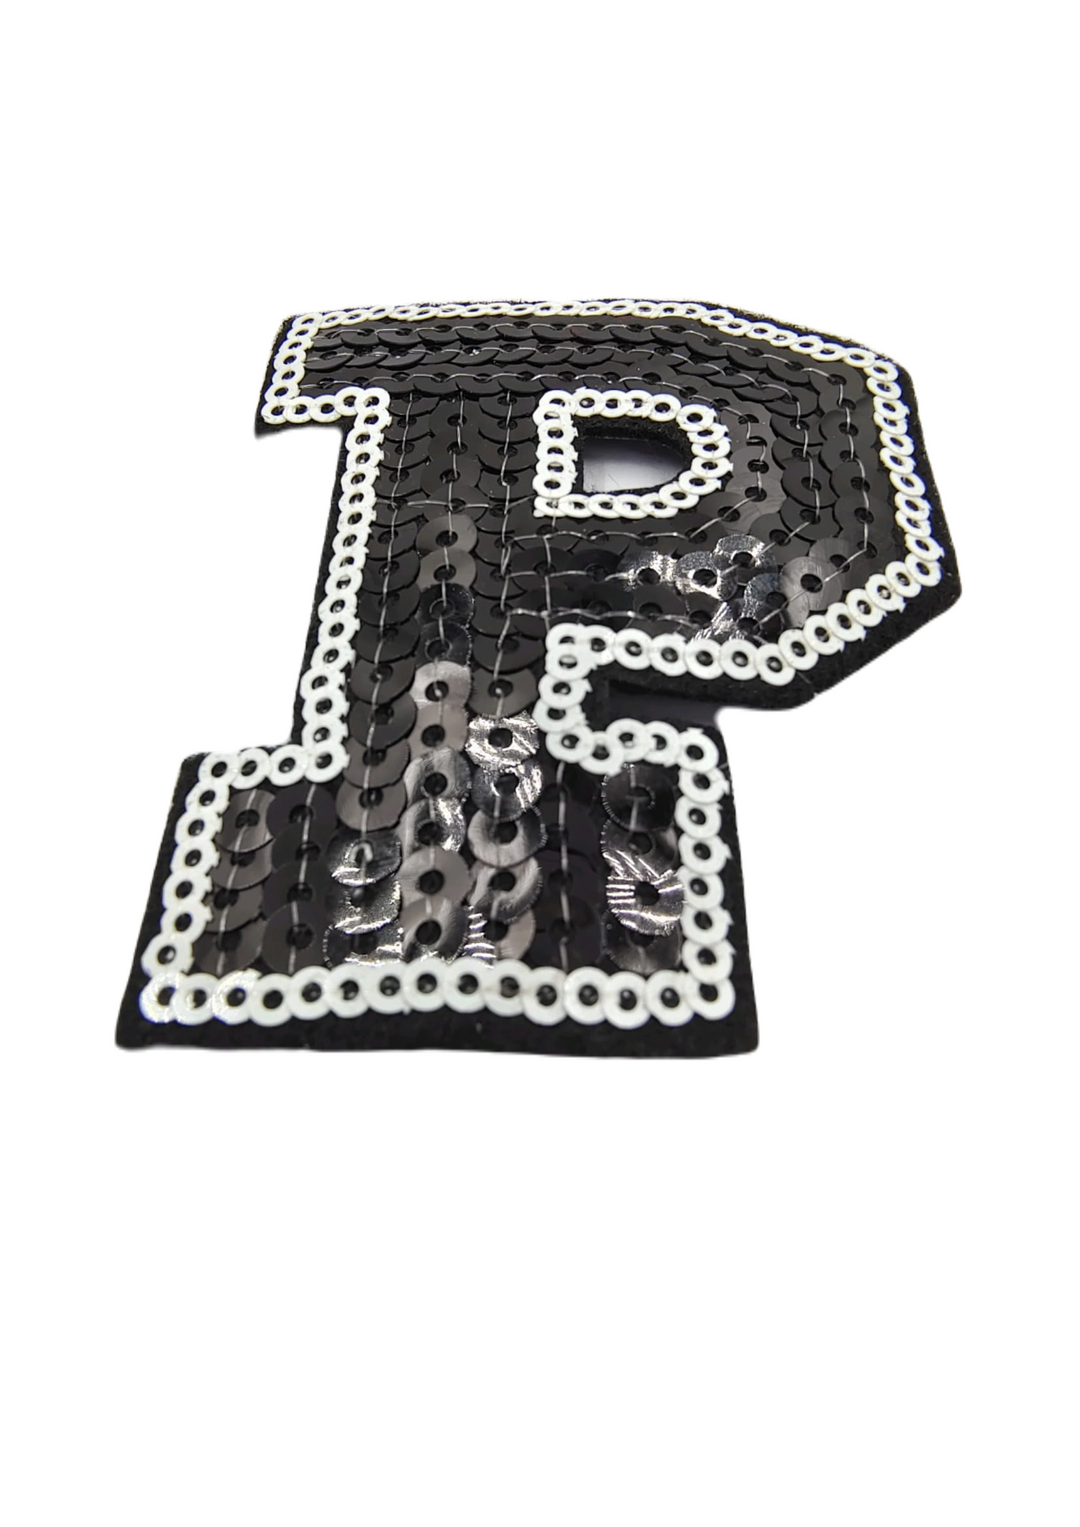 Black & White "P" Latter Sequins Hot-Fix Patch